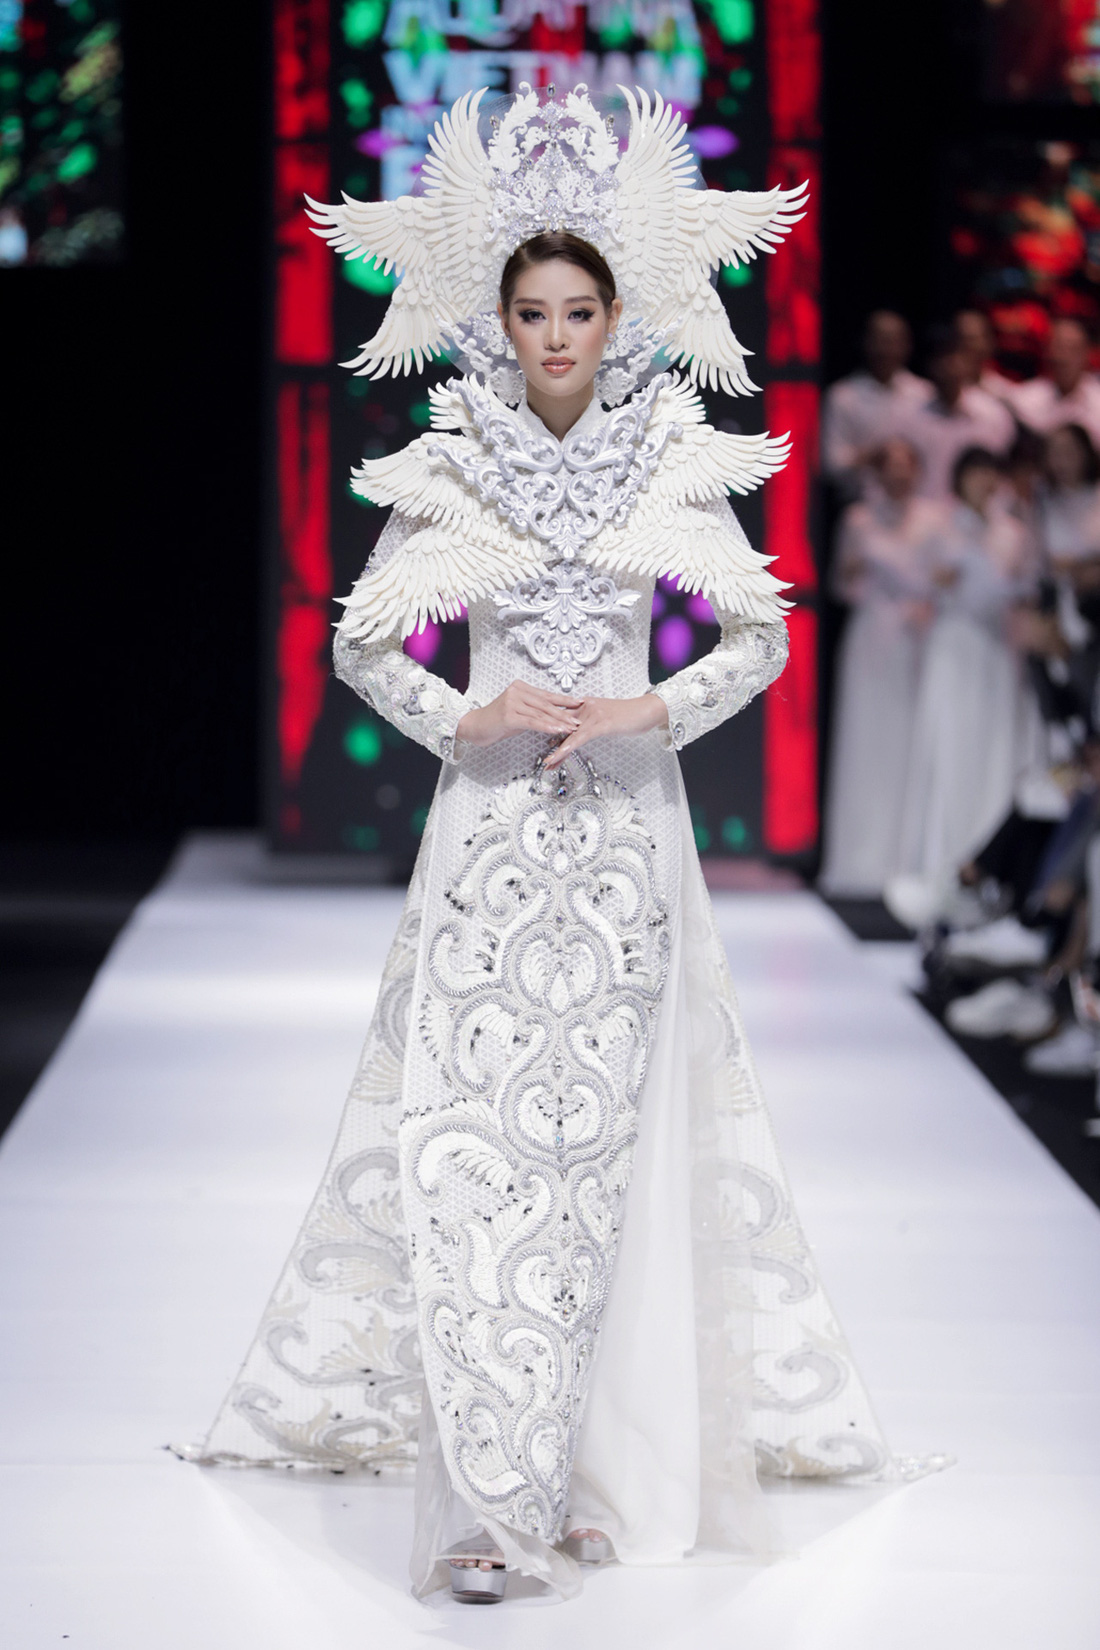 Hoa hậu Khánh Vân làm vedette, NSND Hồng Vân làm người mẫu catwalk cho nhà thiết kế Minh Châu - Ảnh 1.